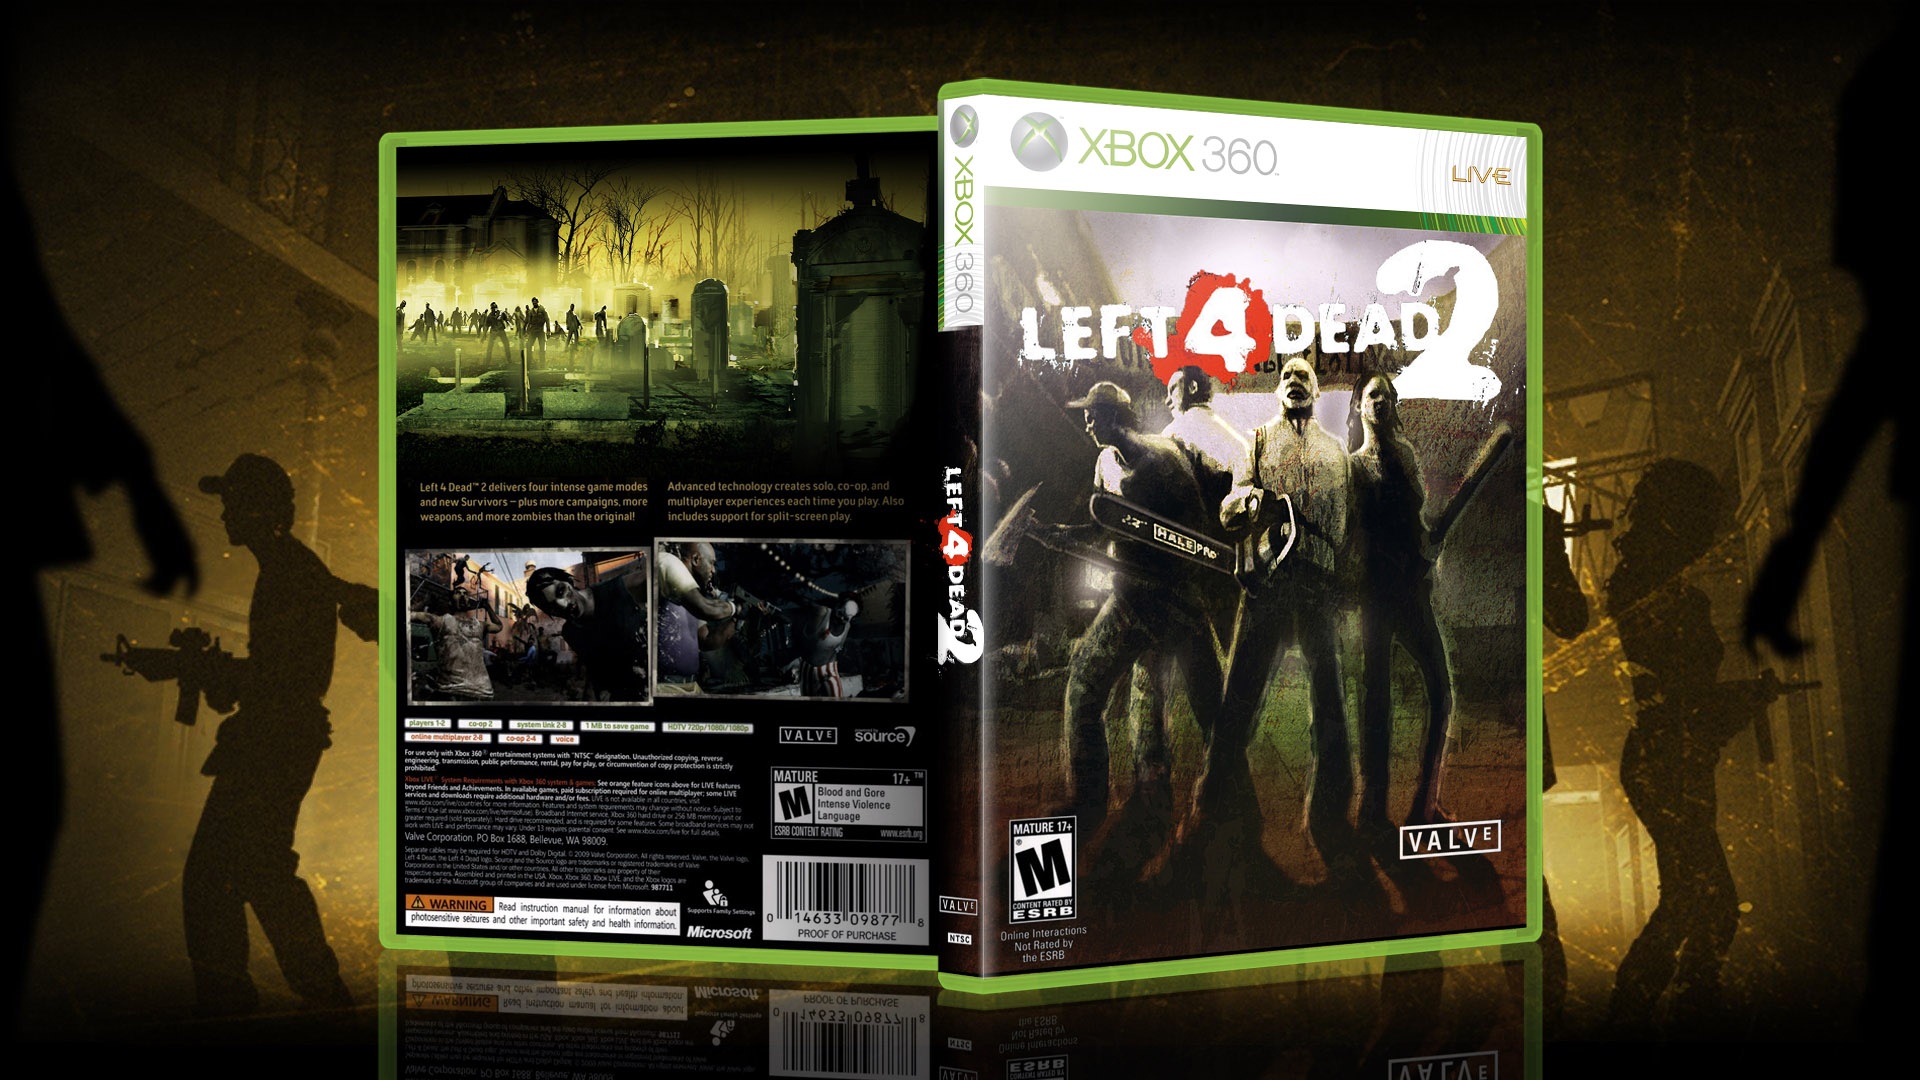 Хбокс 360 на двоих. Хбокс 360 left 4 Dead. Left 4 Dead 2 Xbox 360 этикетка. Left 4 Dead 2 Xbox 360 диск.